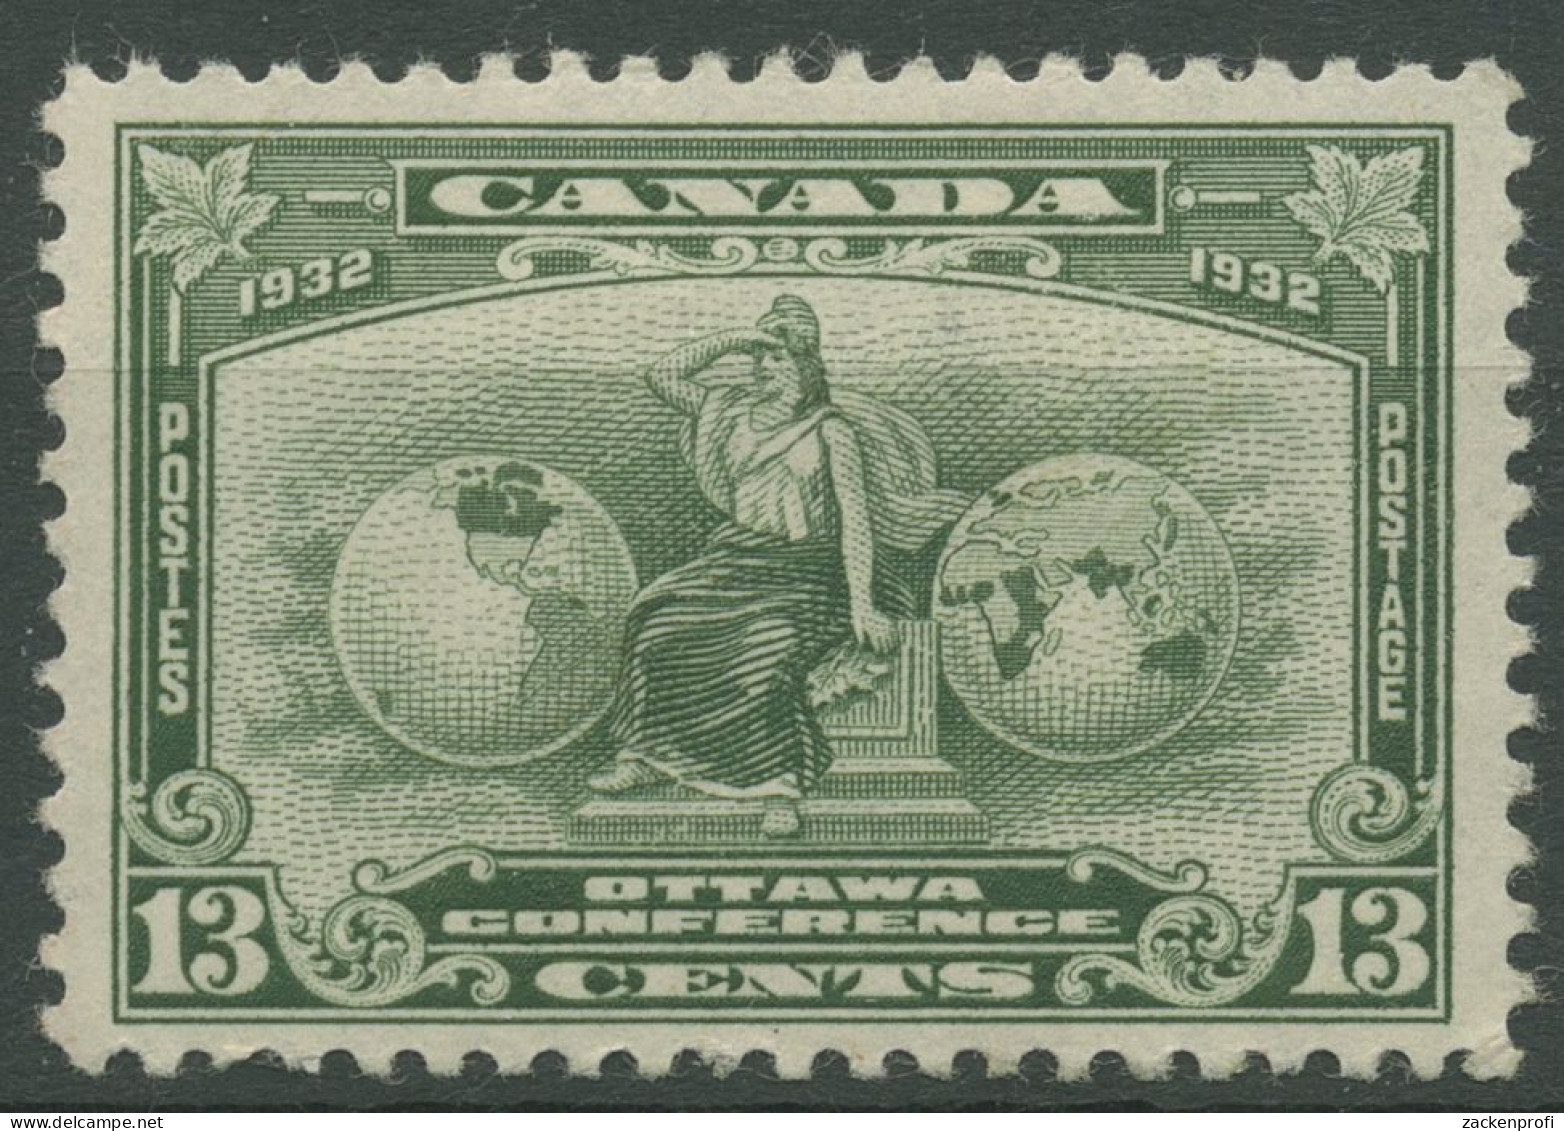 Kanada 1932 Wirtschaftskonferenz In Ottawa Allegorie 161 Mit Falz, Haftstellen - Unused Stamps